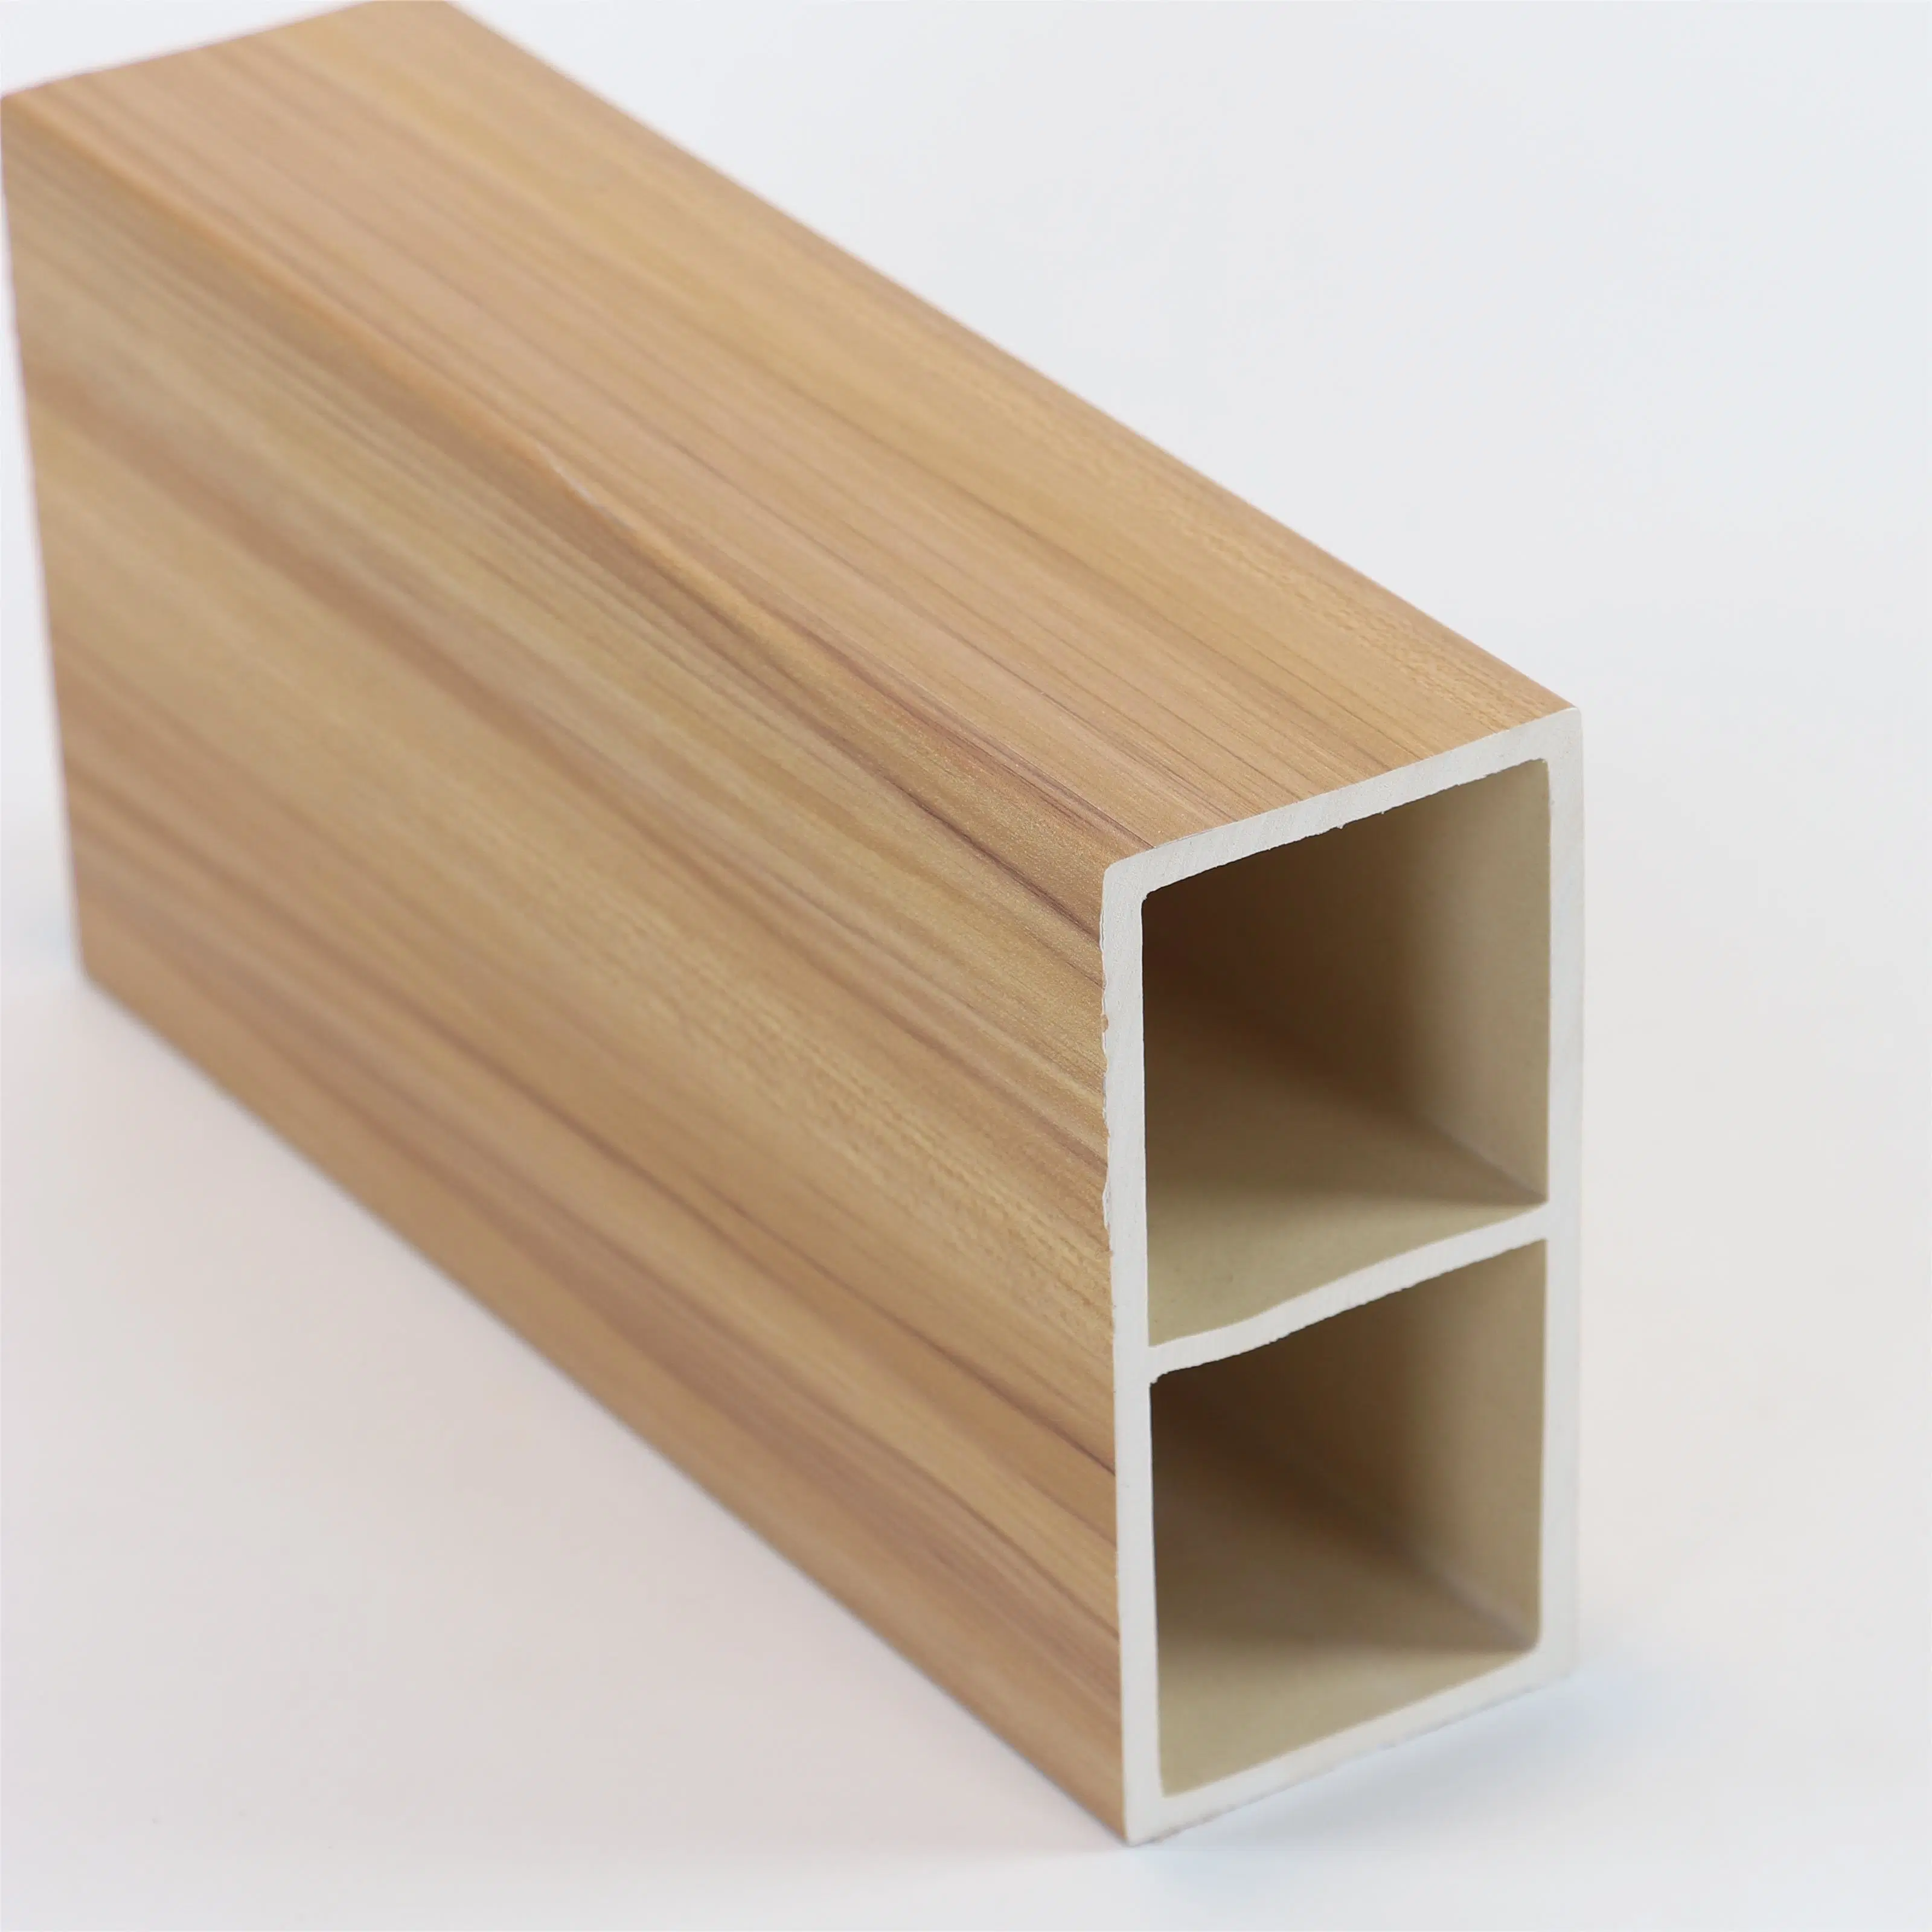 PVC plastique composite bois plastique composite Décoration carré tube en bois